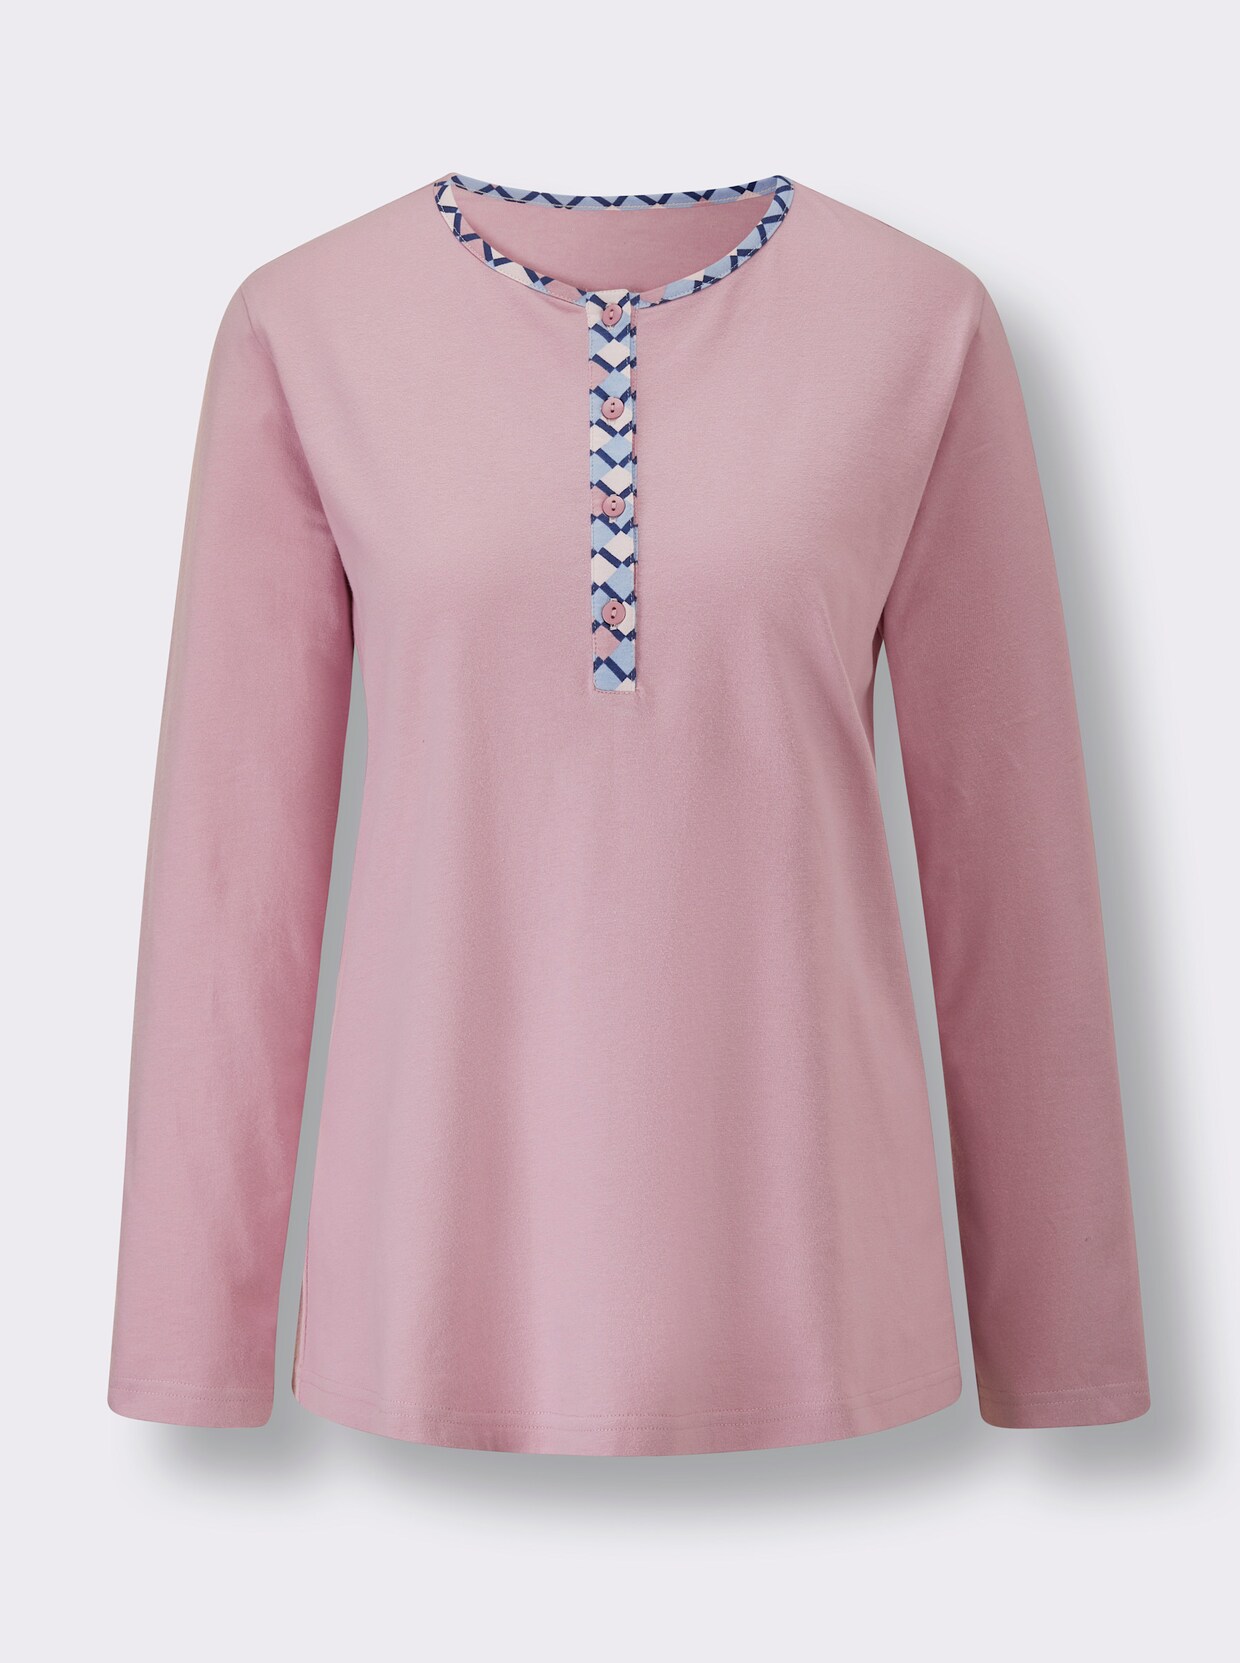 Comtessa Schlafanzug - rosé-bleu-bedruckt